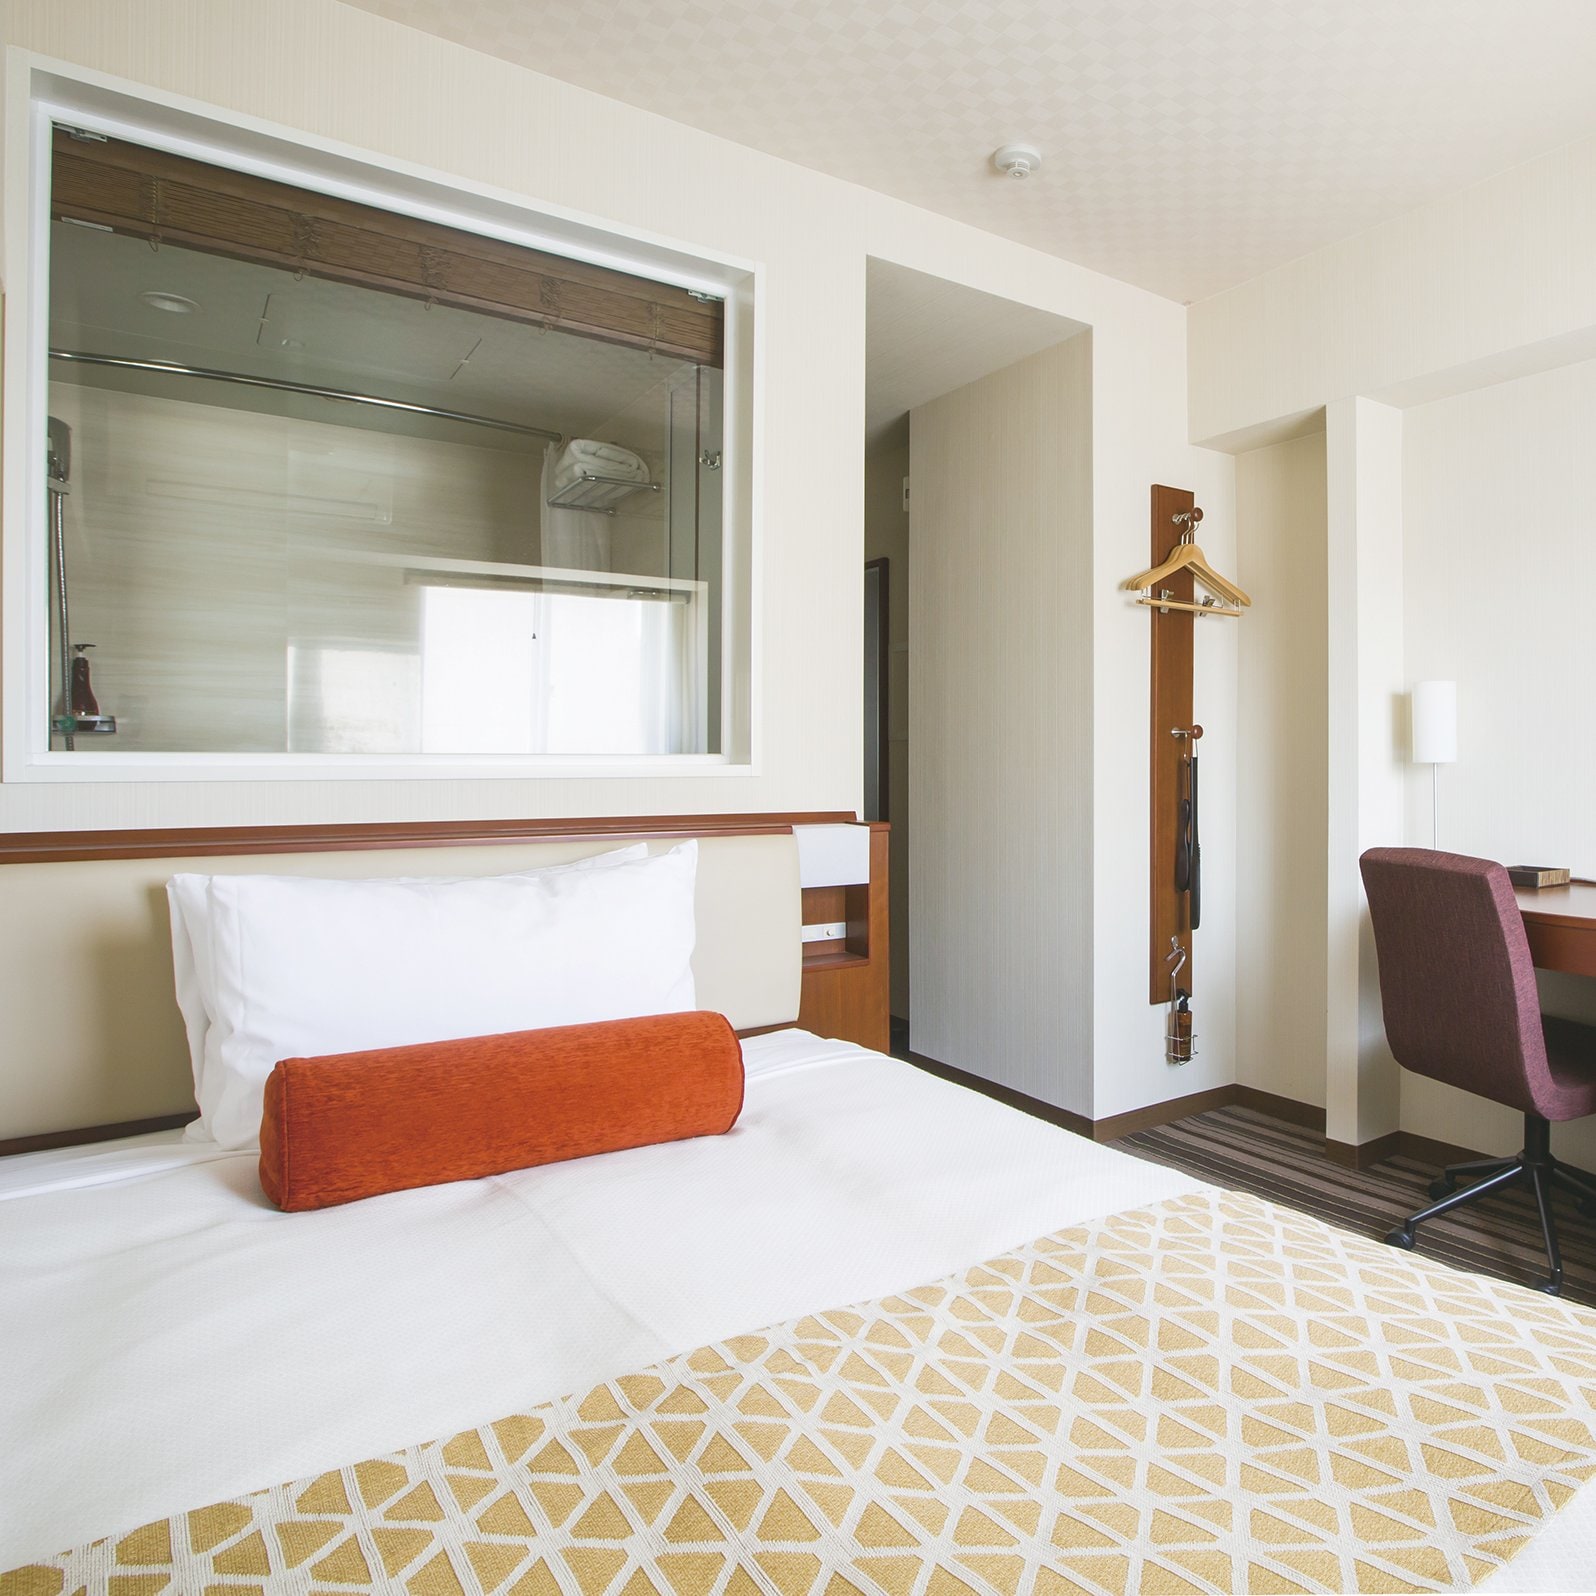 Standard room ◆ Bed width 1400mm ◆ Simmons mattress